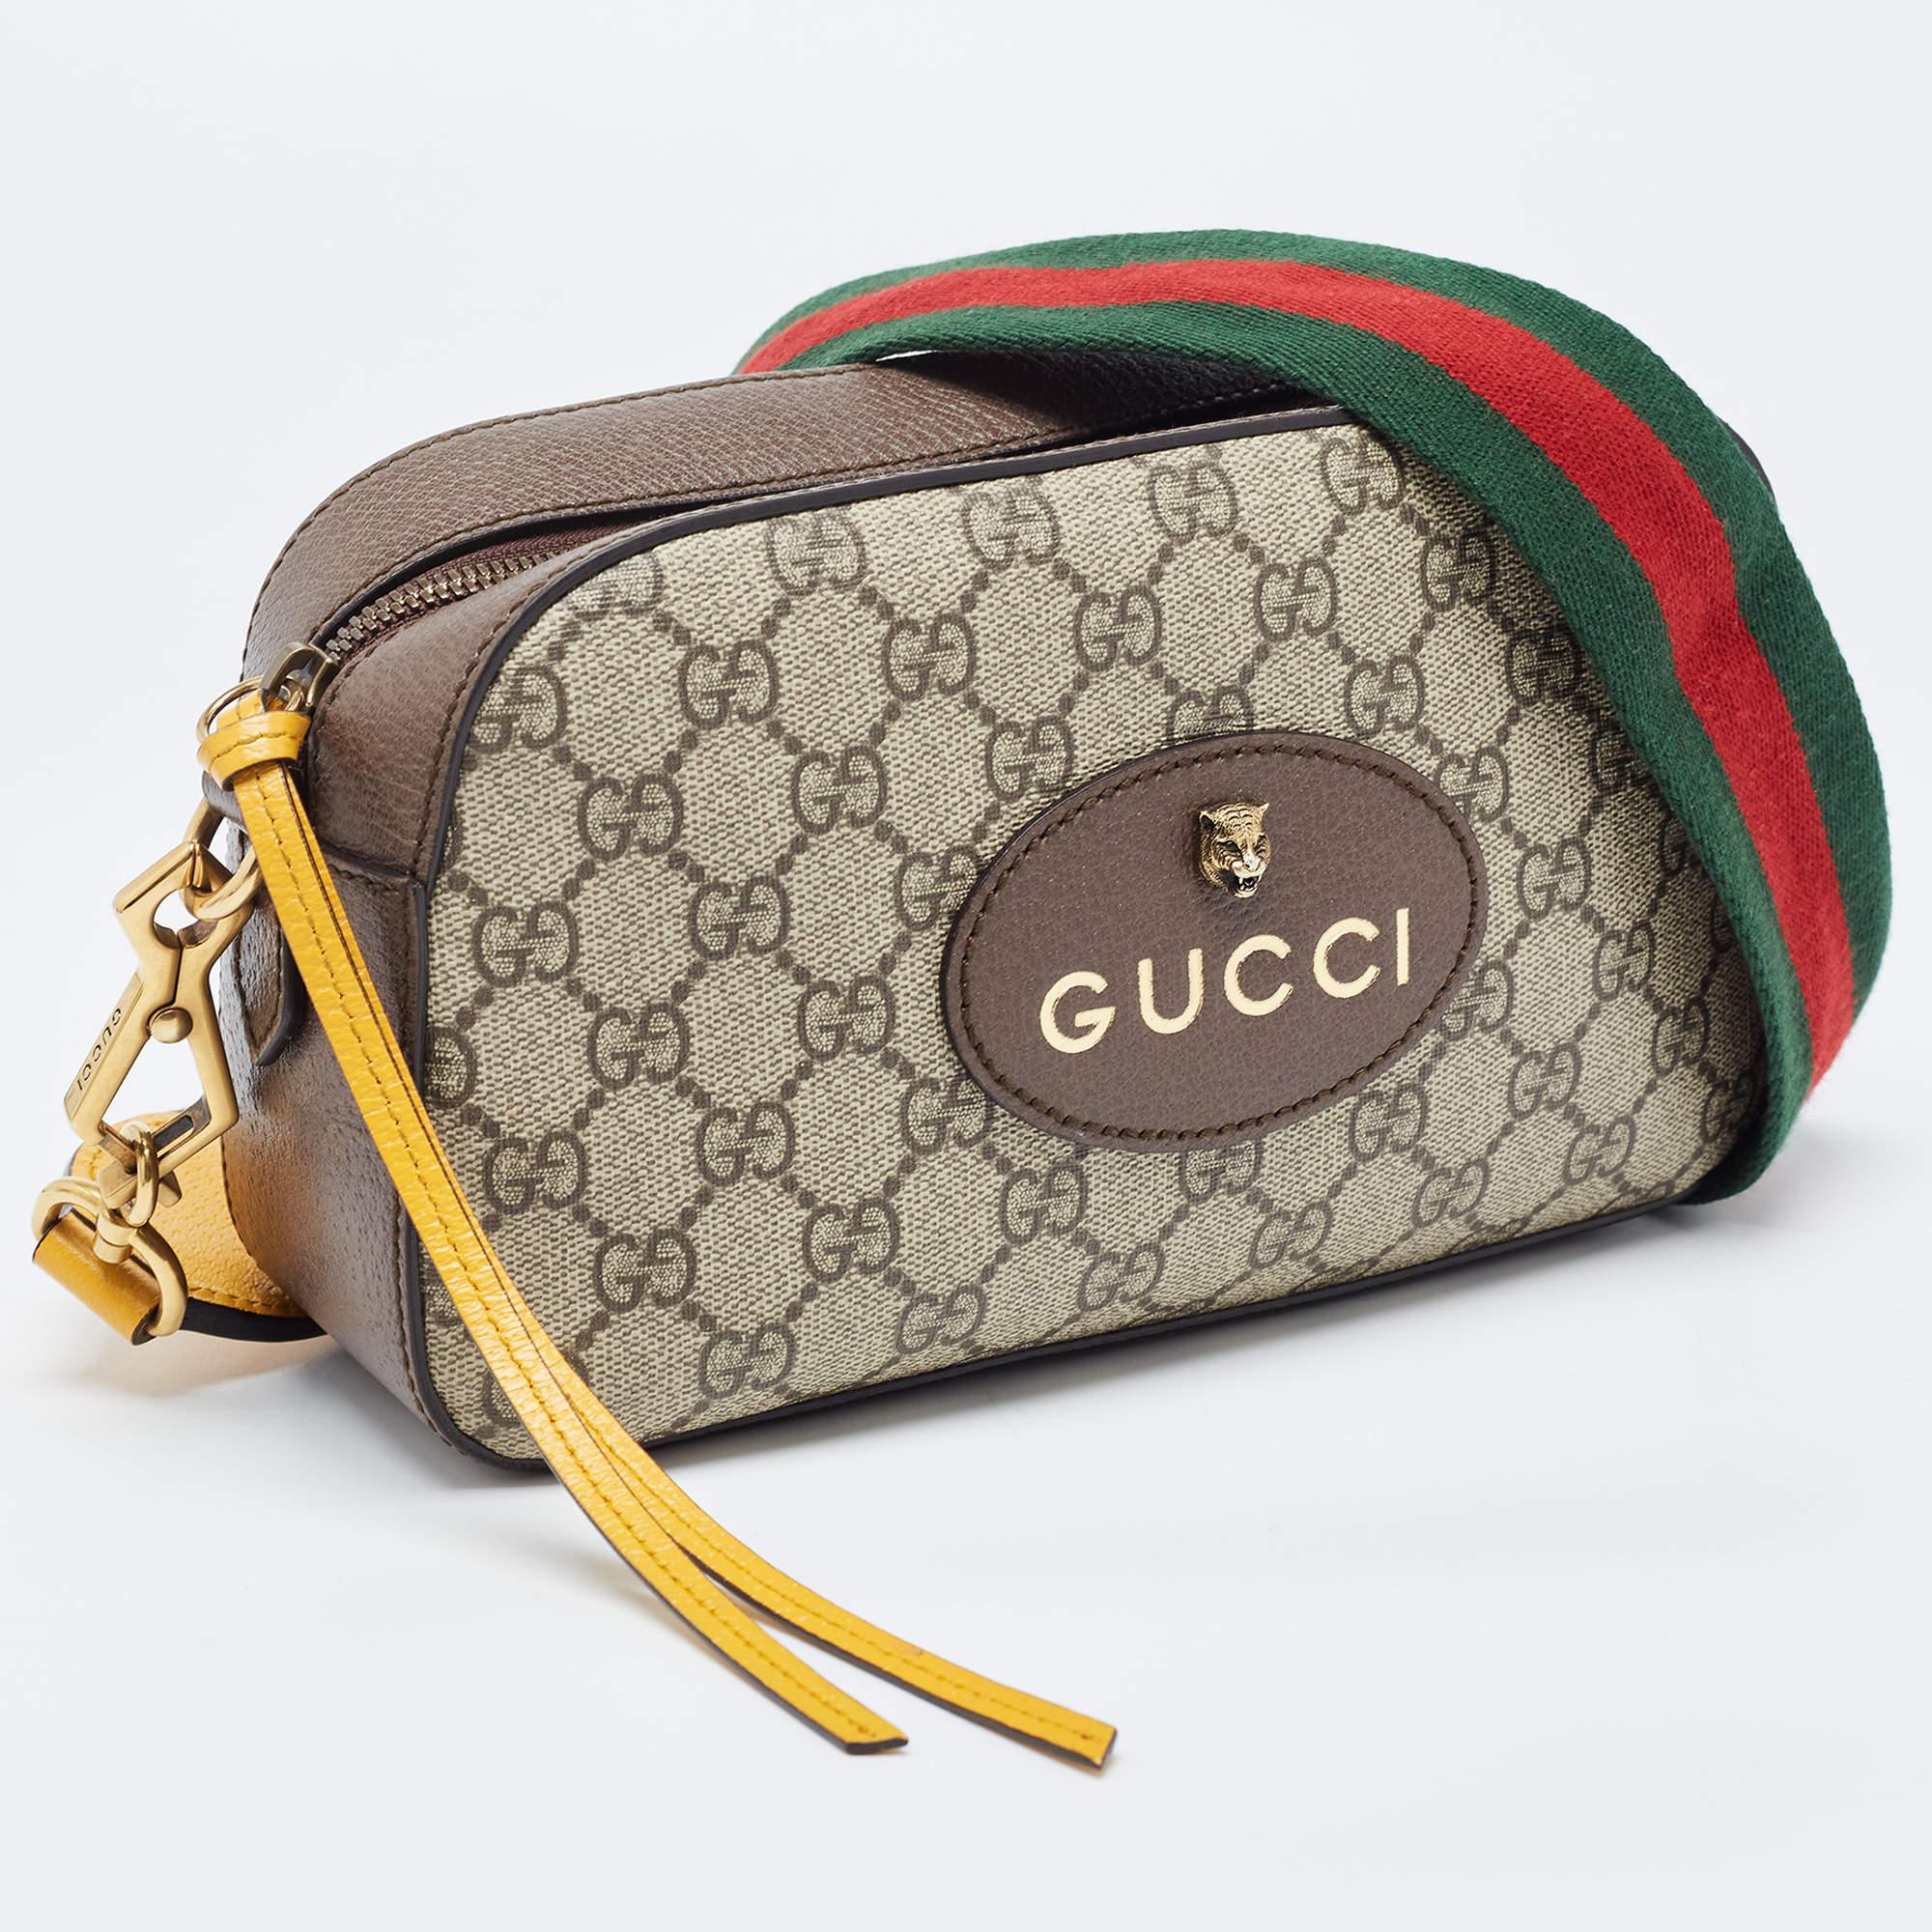 Le sac messager Gucci Neo Vintage arbore le monogramme emblématique GG sur une toile résistante. D'inspiration vintage, il est doté d'un intérieur spacieux, d'une bandoulière réglable, d'une bordure en cuir et d'une quincaillerie dorée à l'ancienne,